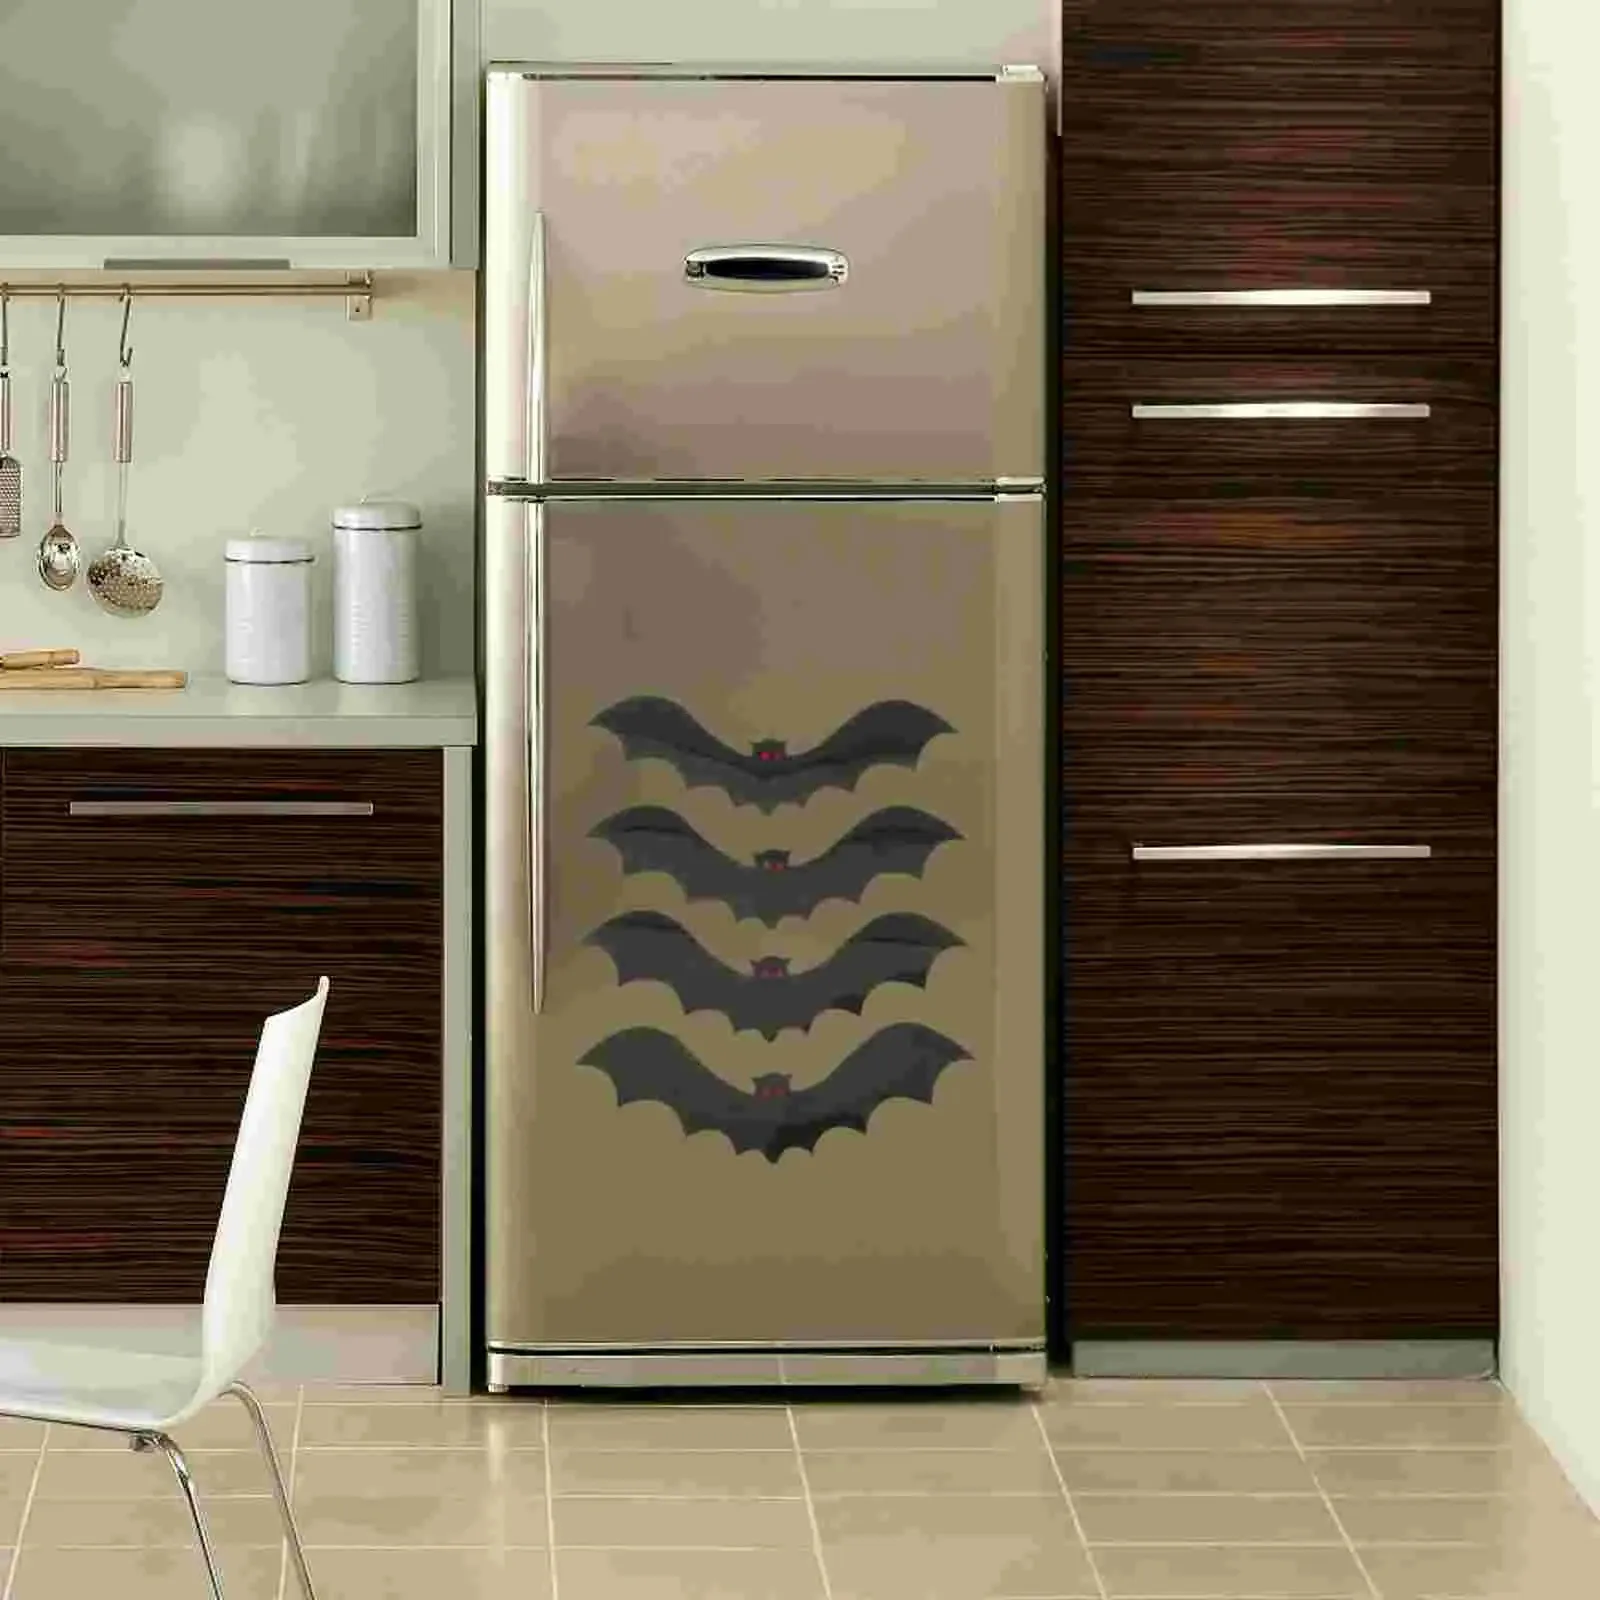 Autocollants muraux magnétiques chauve-souris, autocollants décoratifs, aimants gothiques pour réfrigérateur d'halloween, 231208